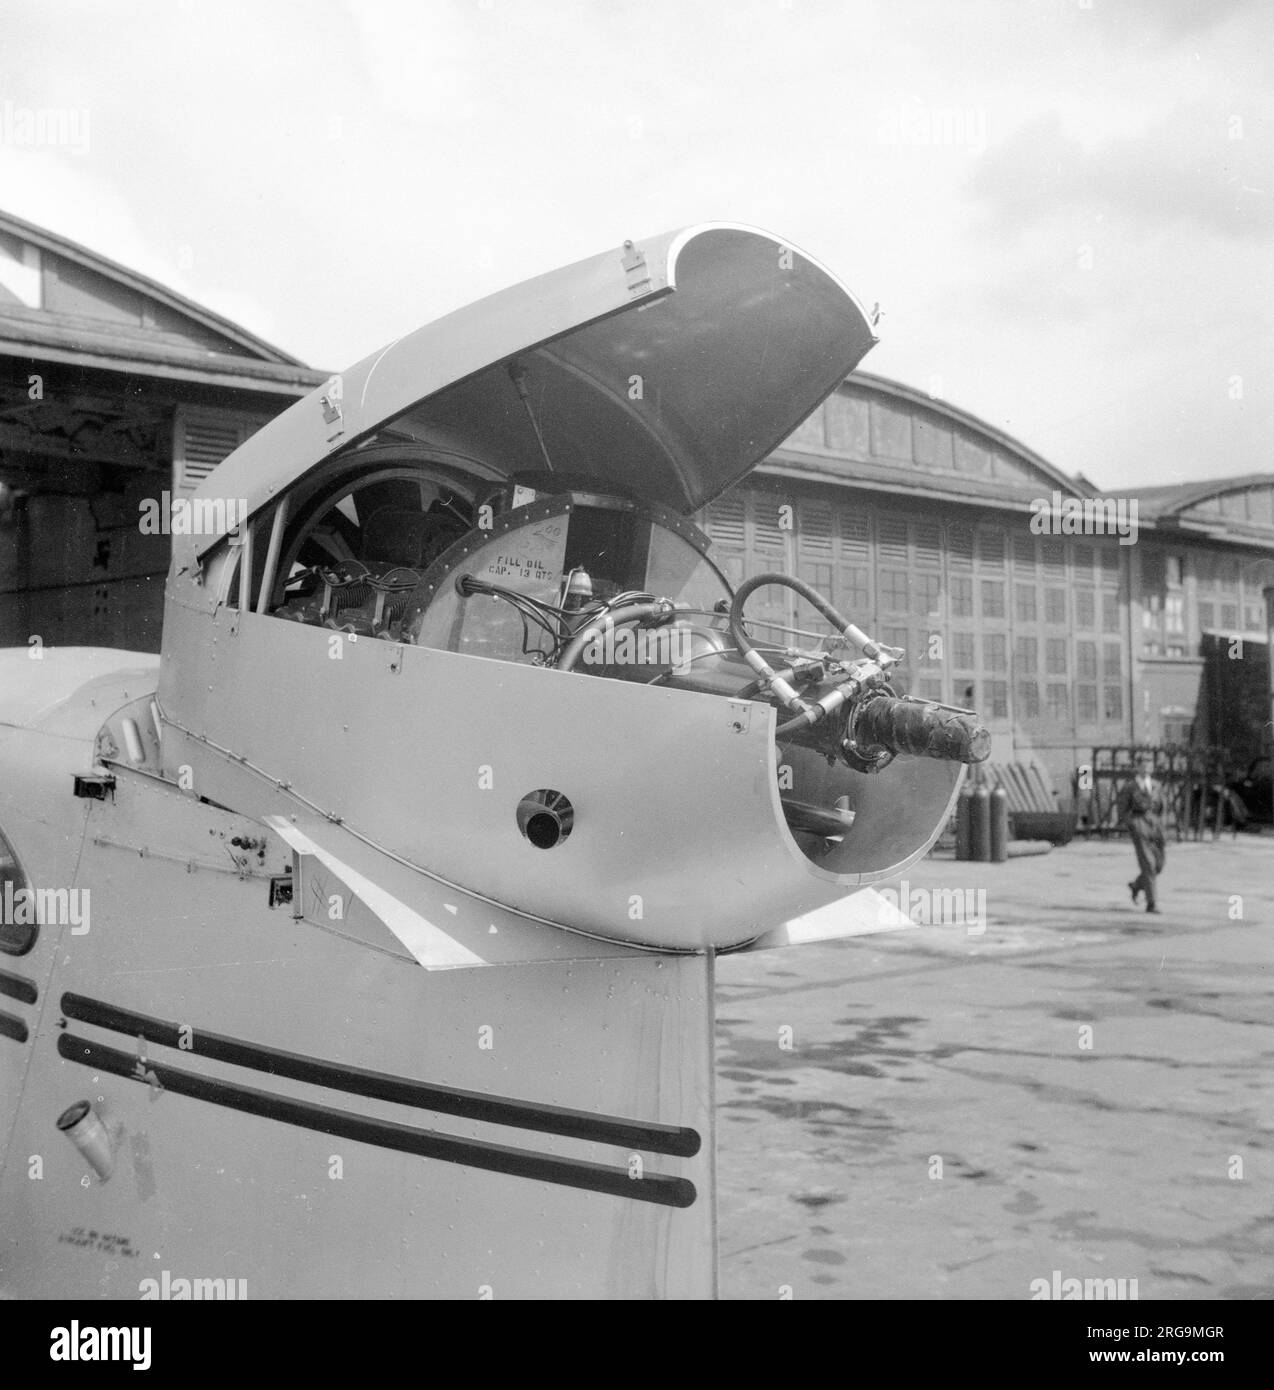 REPUBLIQUE RC-1 assemblage Seabee à l'aéroport de Croydon, réalisé par les avions et moteurs Rollason. Trois Seabee ont été importées de la chaîne de production de Farmingdale pour être vendues en Scandinavie. Le compartiment moteur du pousseur avec le capot ouvert. Banque D'Images